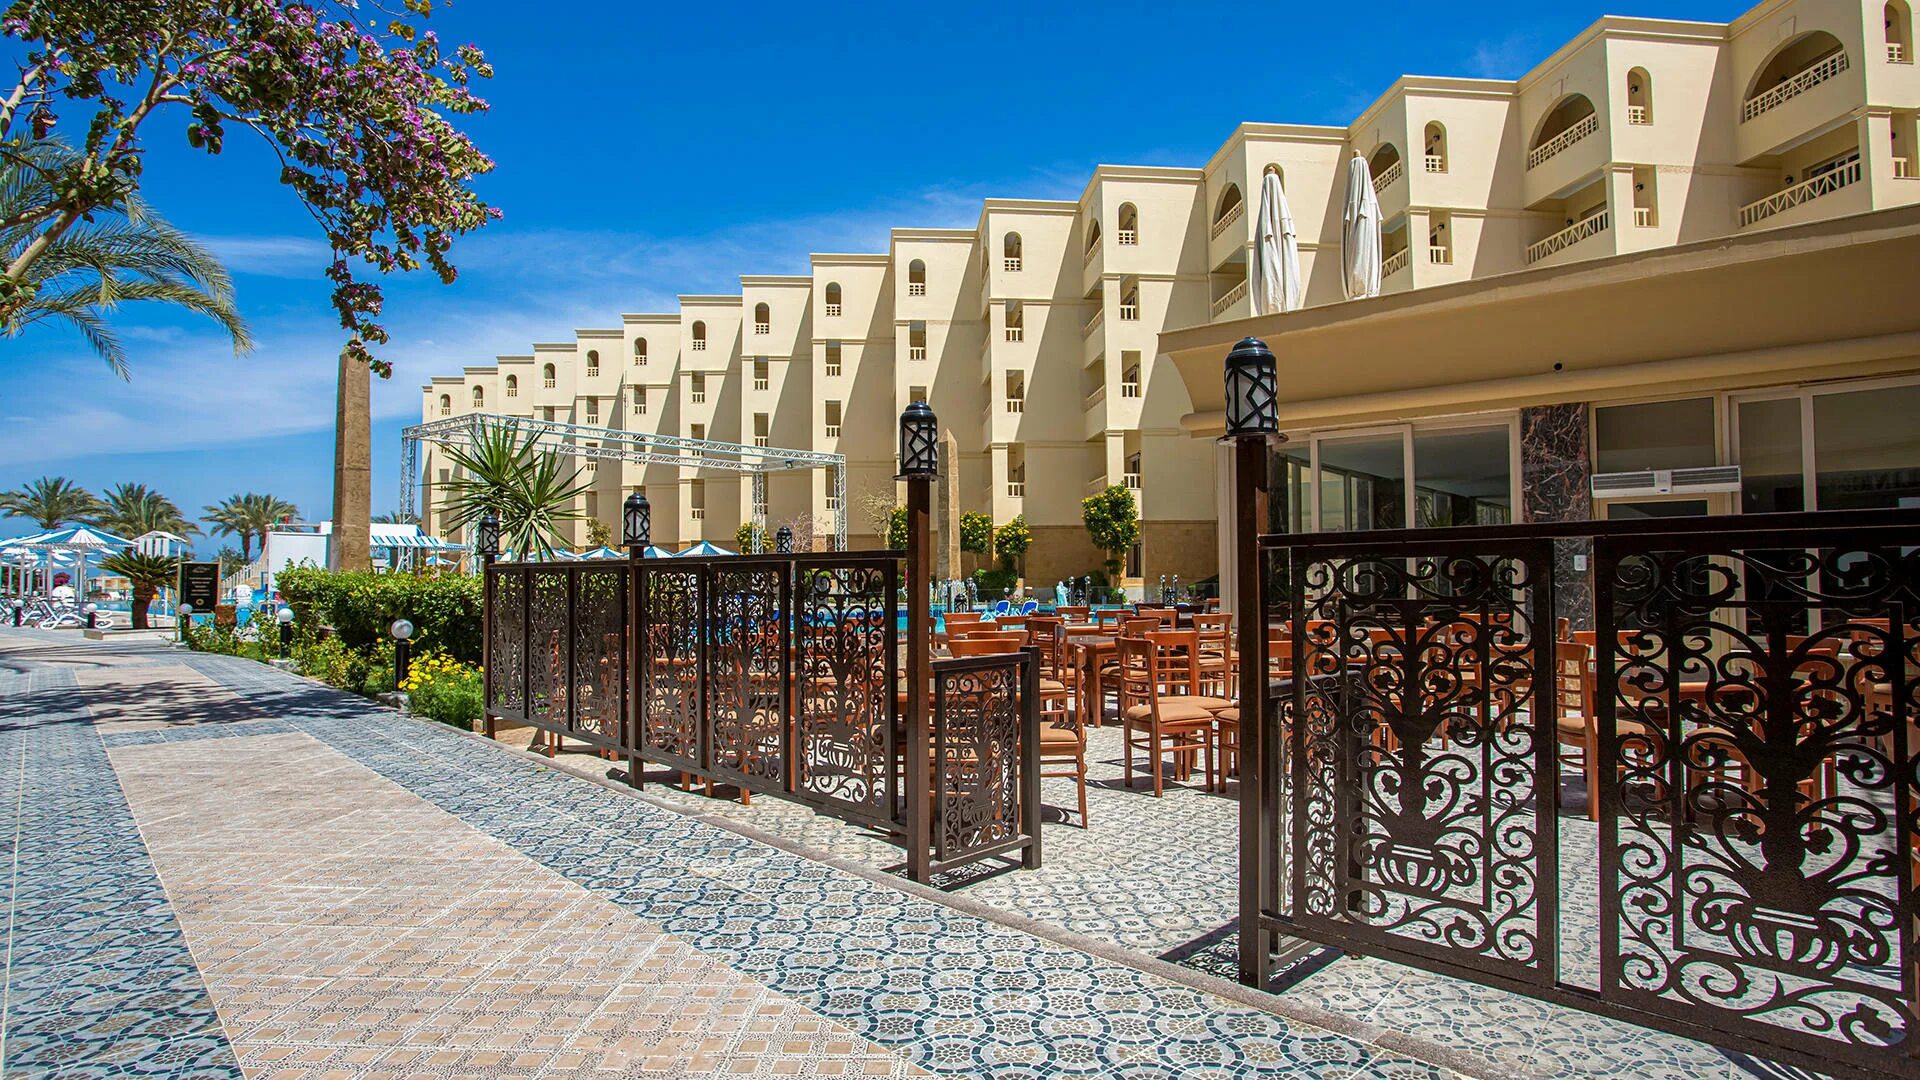 Египет amc royal hotel spa. AMC Royal Hotel в Хургаде. AMC Royal Hotel Spa 5. AMC Royal Hotel Spa 5 Египет Хургада. Египет отель АМС Роял Хургада 5.